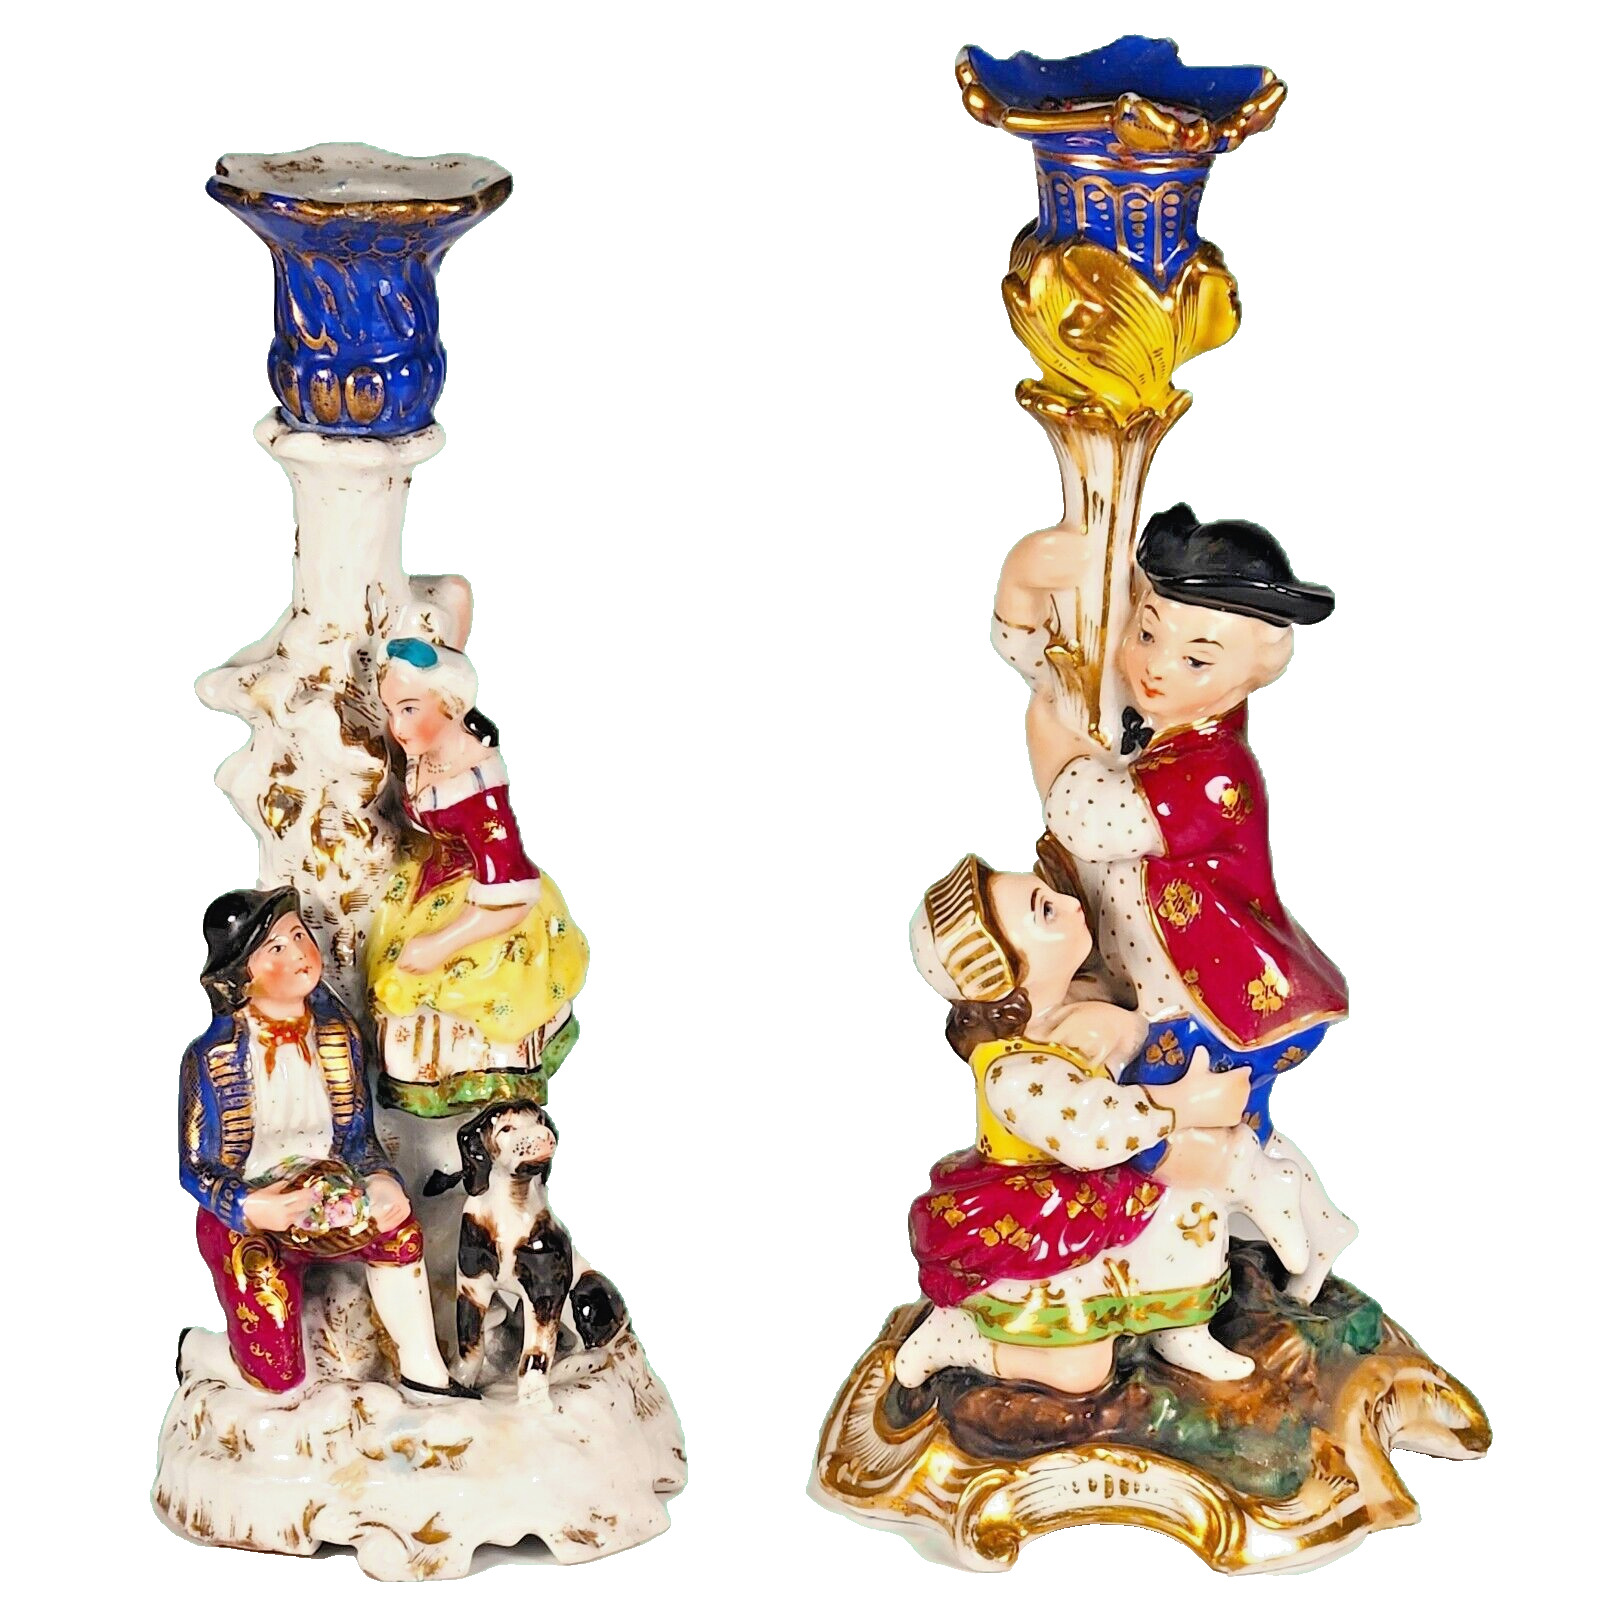 Antique Dresden Figures Ceramic Candlestick Holders - Estate Sale Find